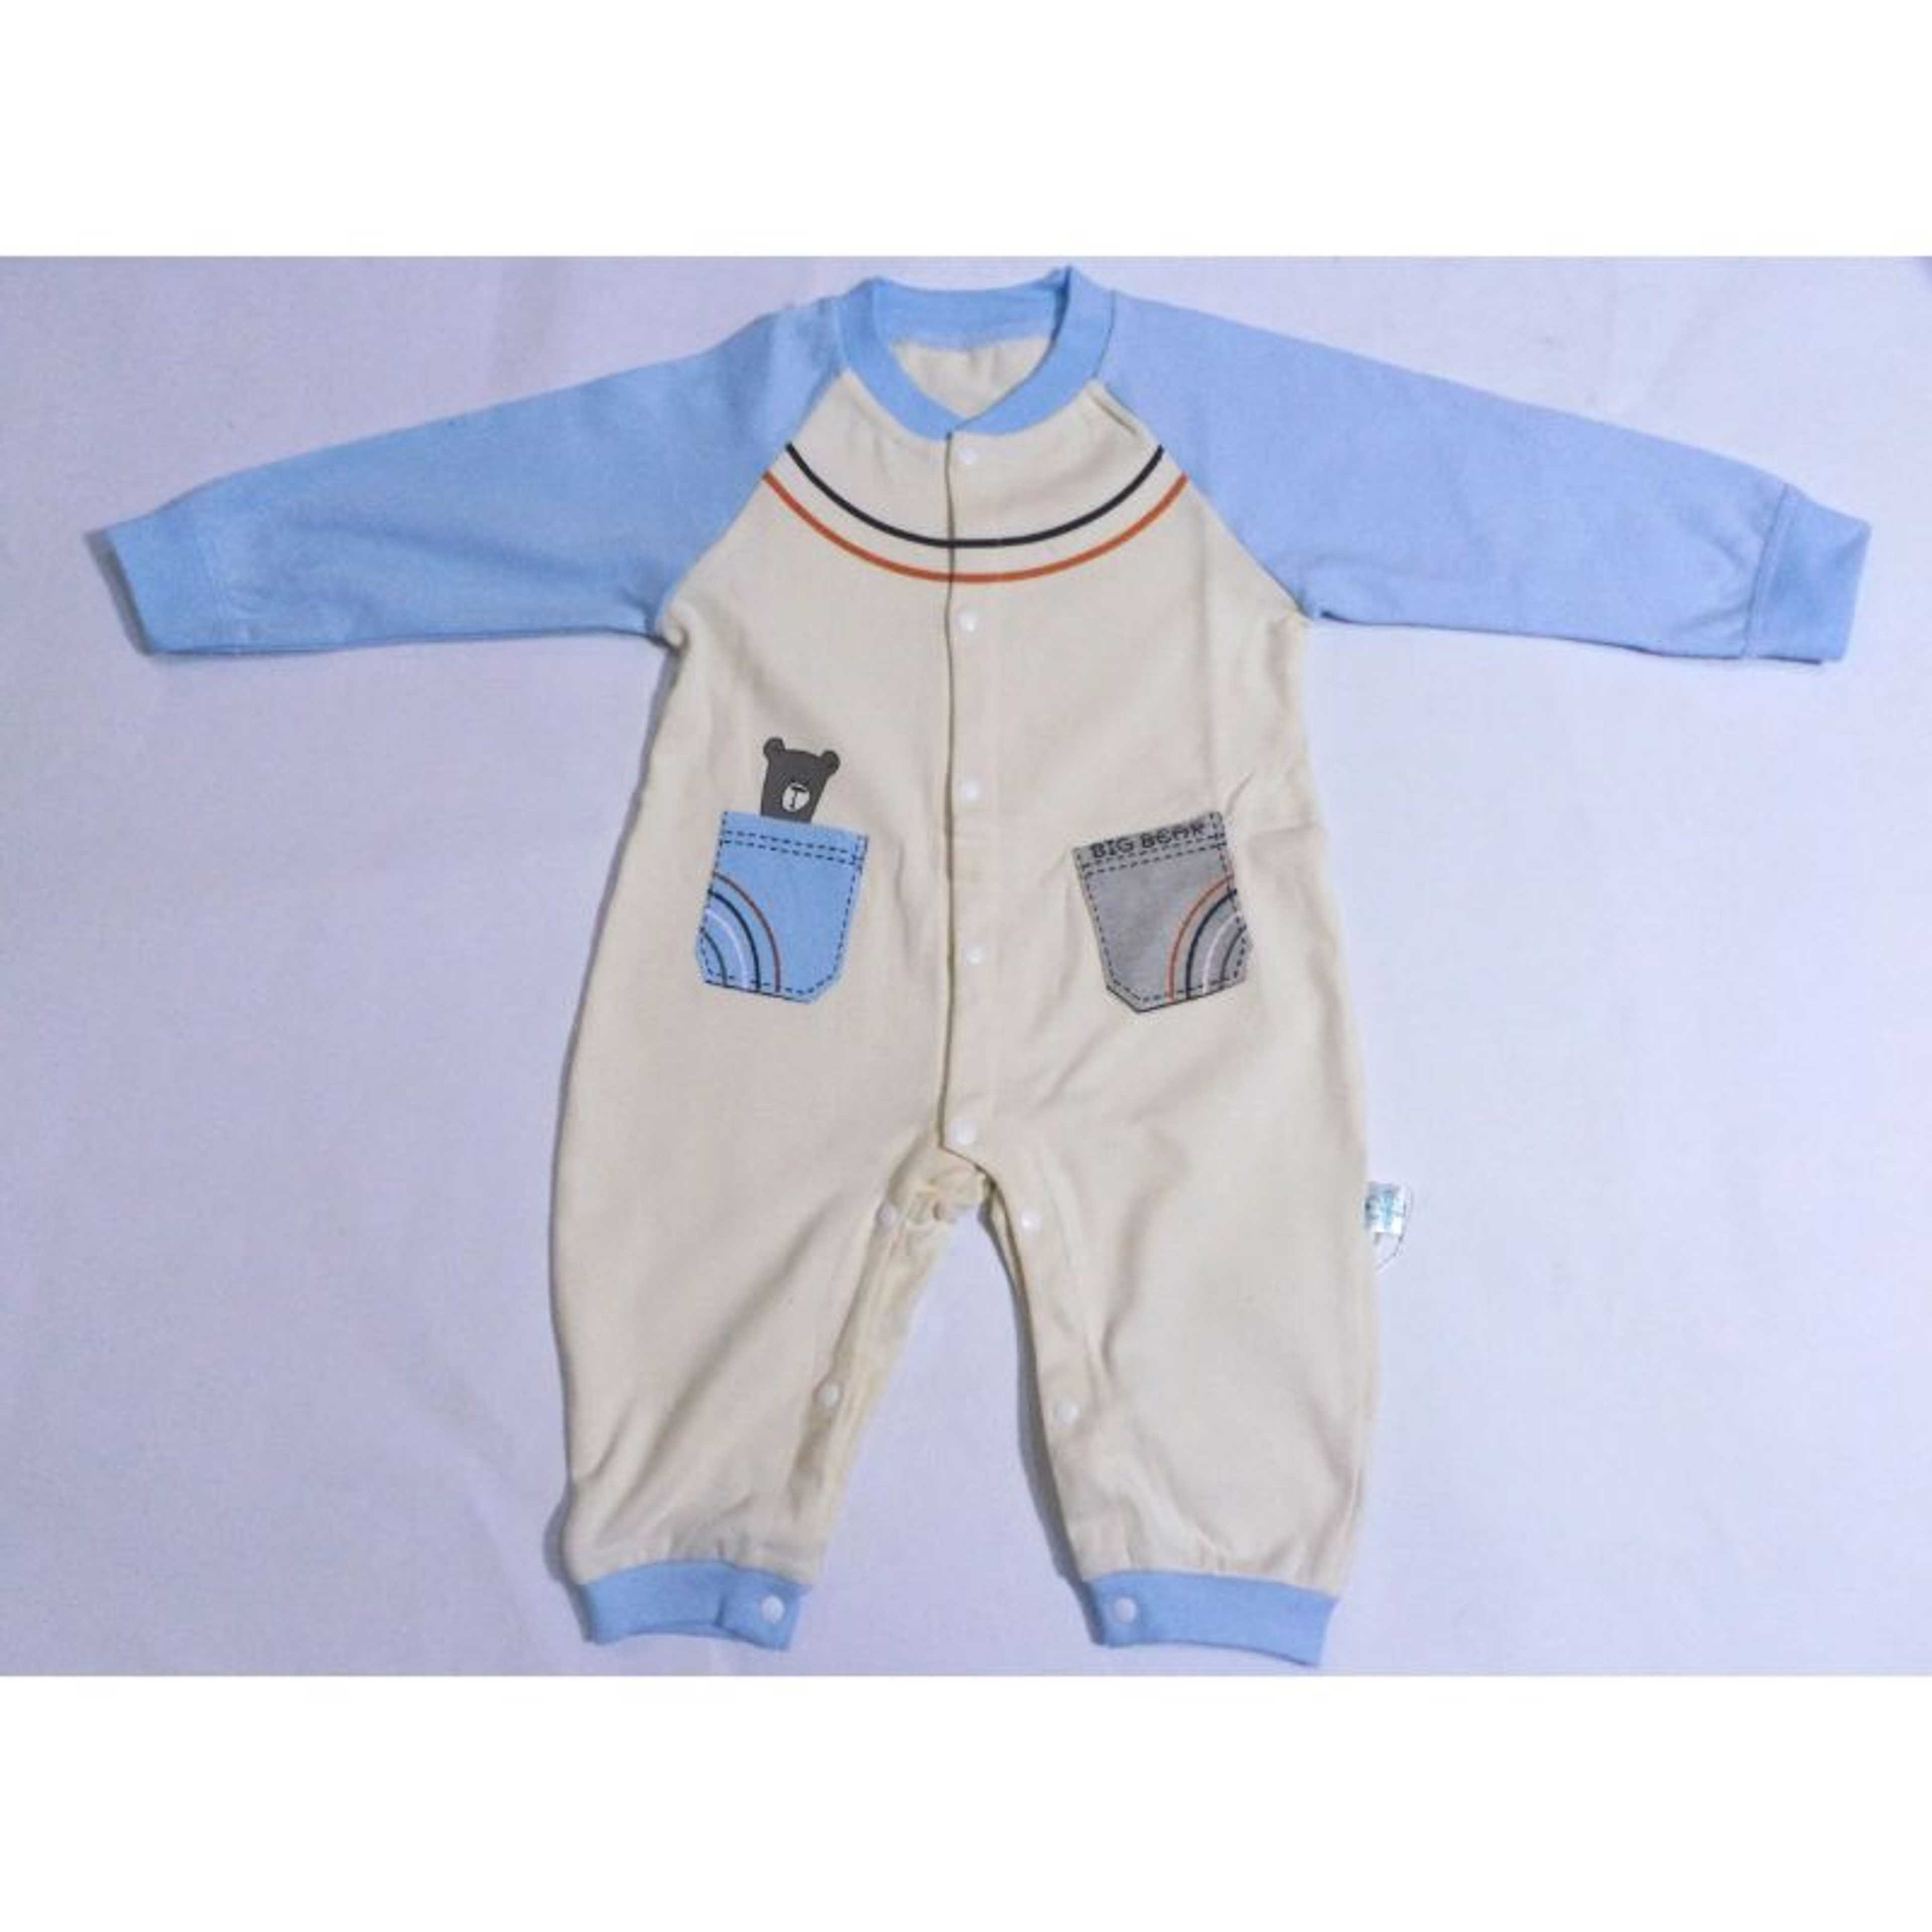 Premium cute baby jumpsuit
